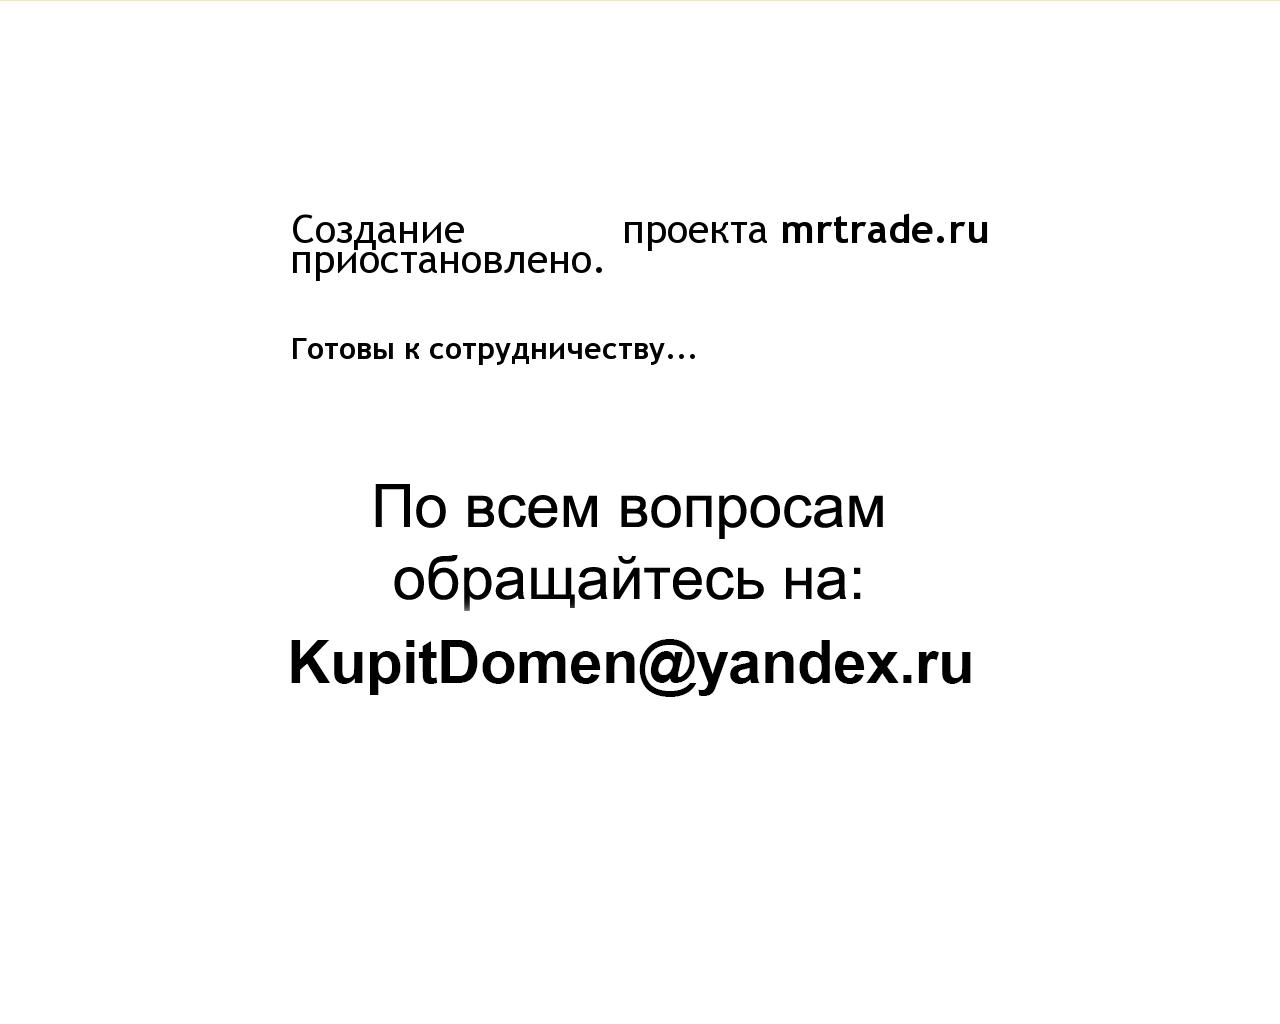 Изображение сайта mrtrade.ru в разрешении 1280x1024